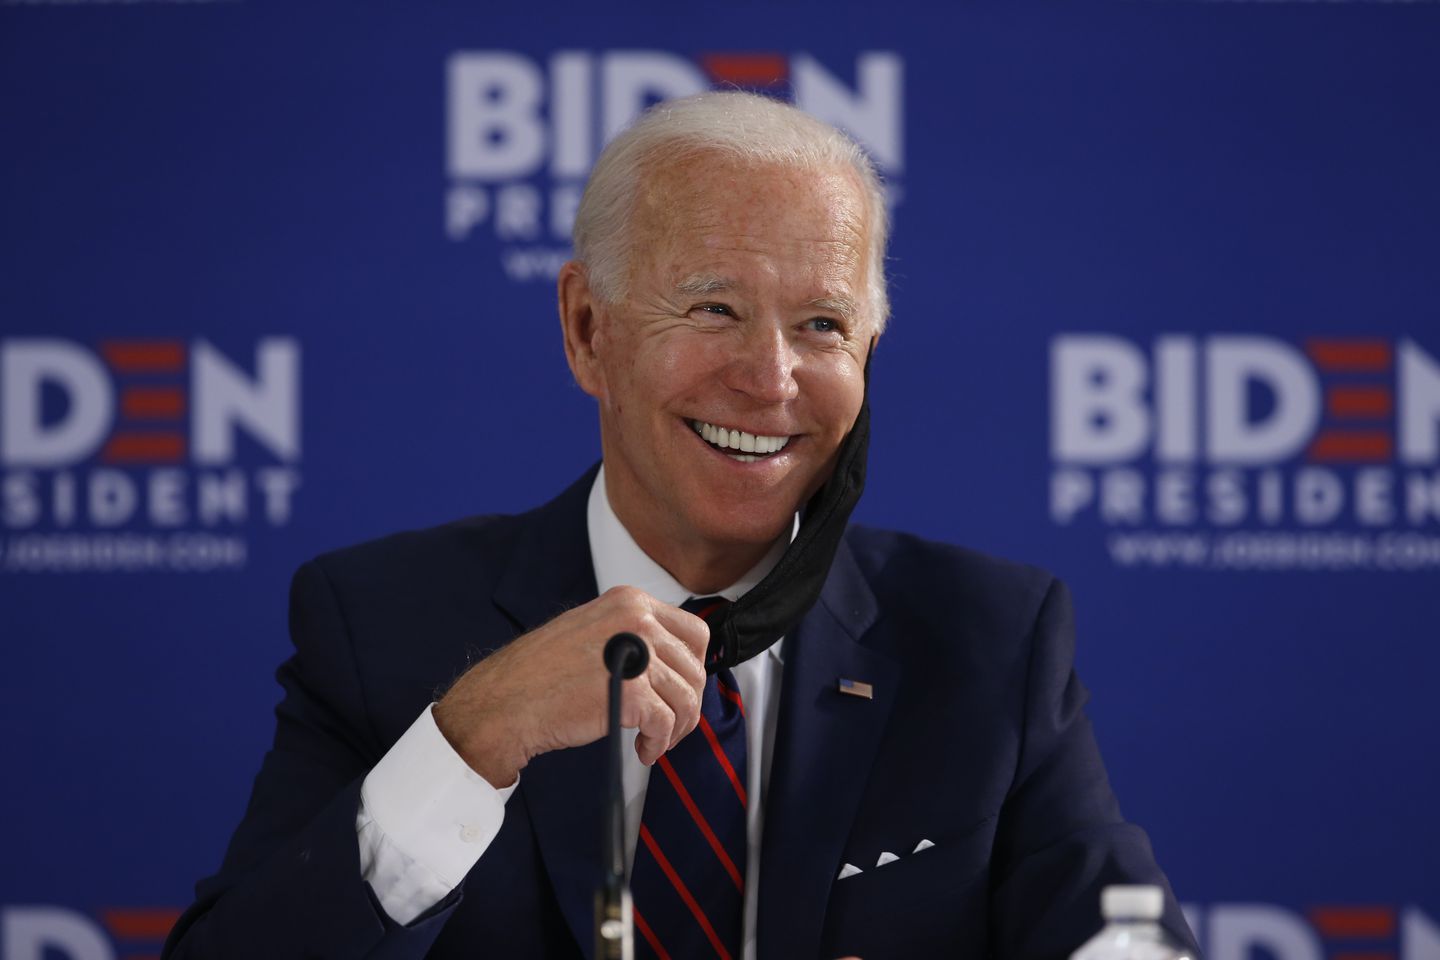 Tiết lộ bất ngờ của ông Joe Biden sau khi chiến thắng bầu cử Mỹ: 'Tôi đã bỏ phiếu cho Donald Trump'